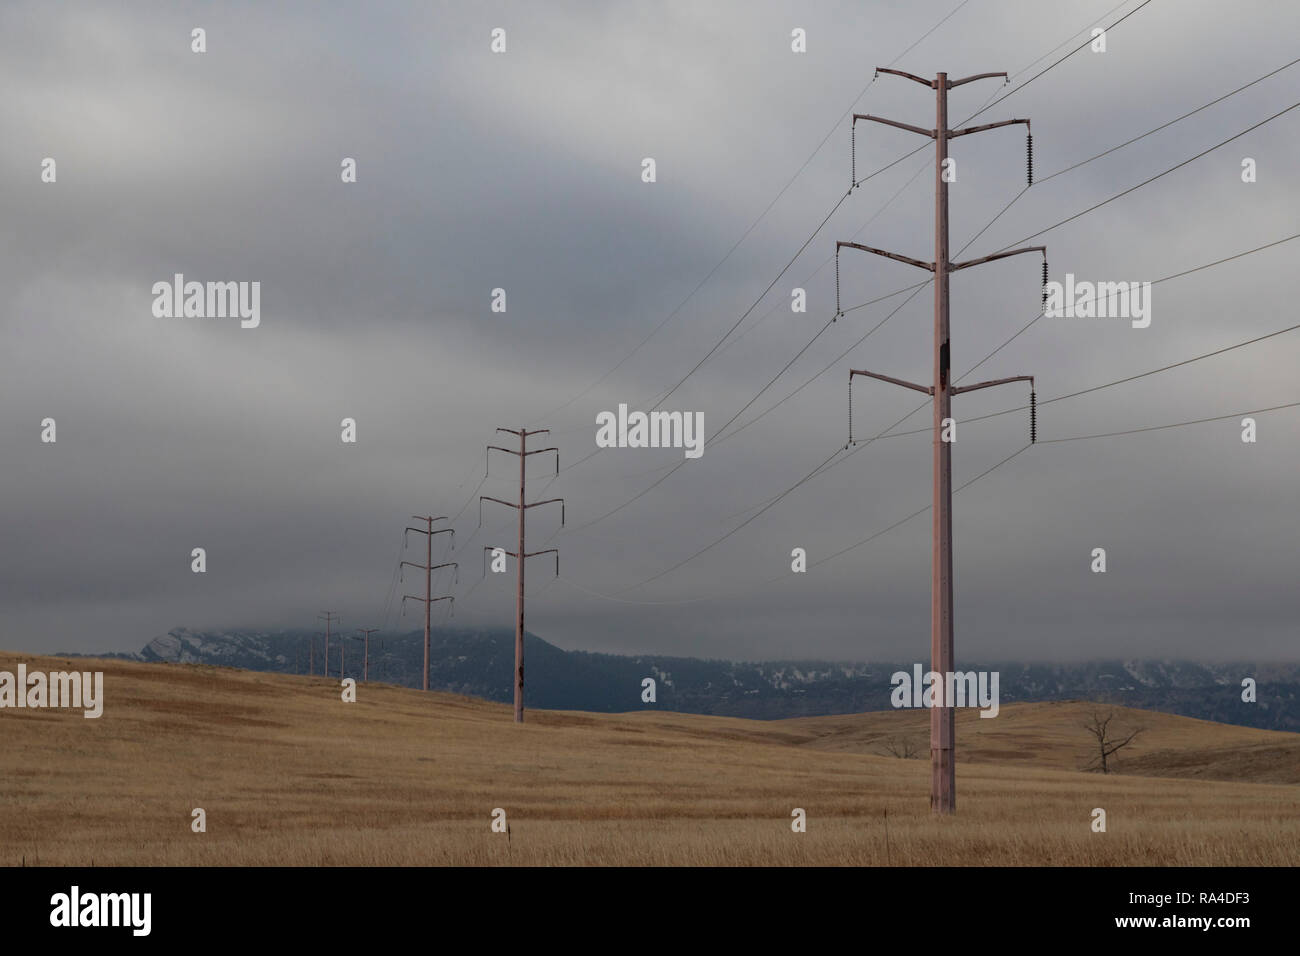 Denver, Colorado - A high-voltage power line crosses Rocky Flats National Wildlife Refuge,. Stock Photo